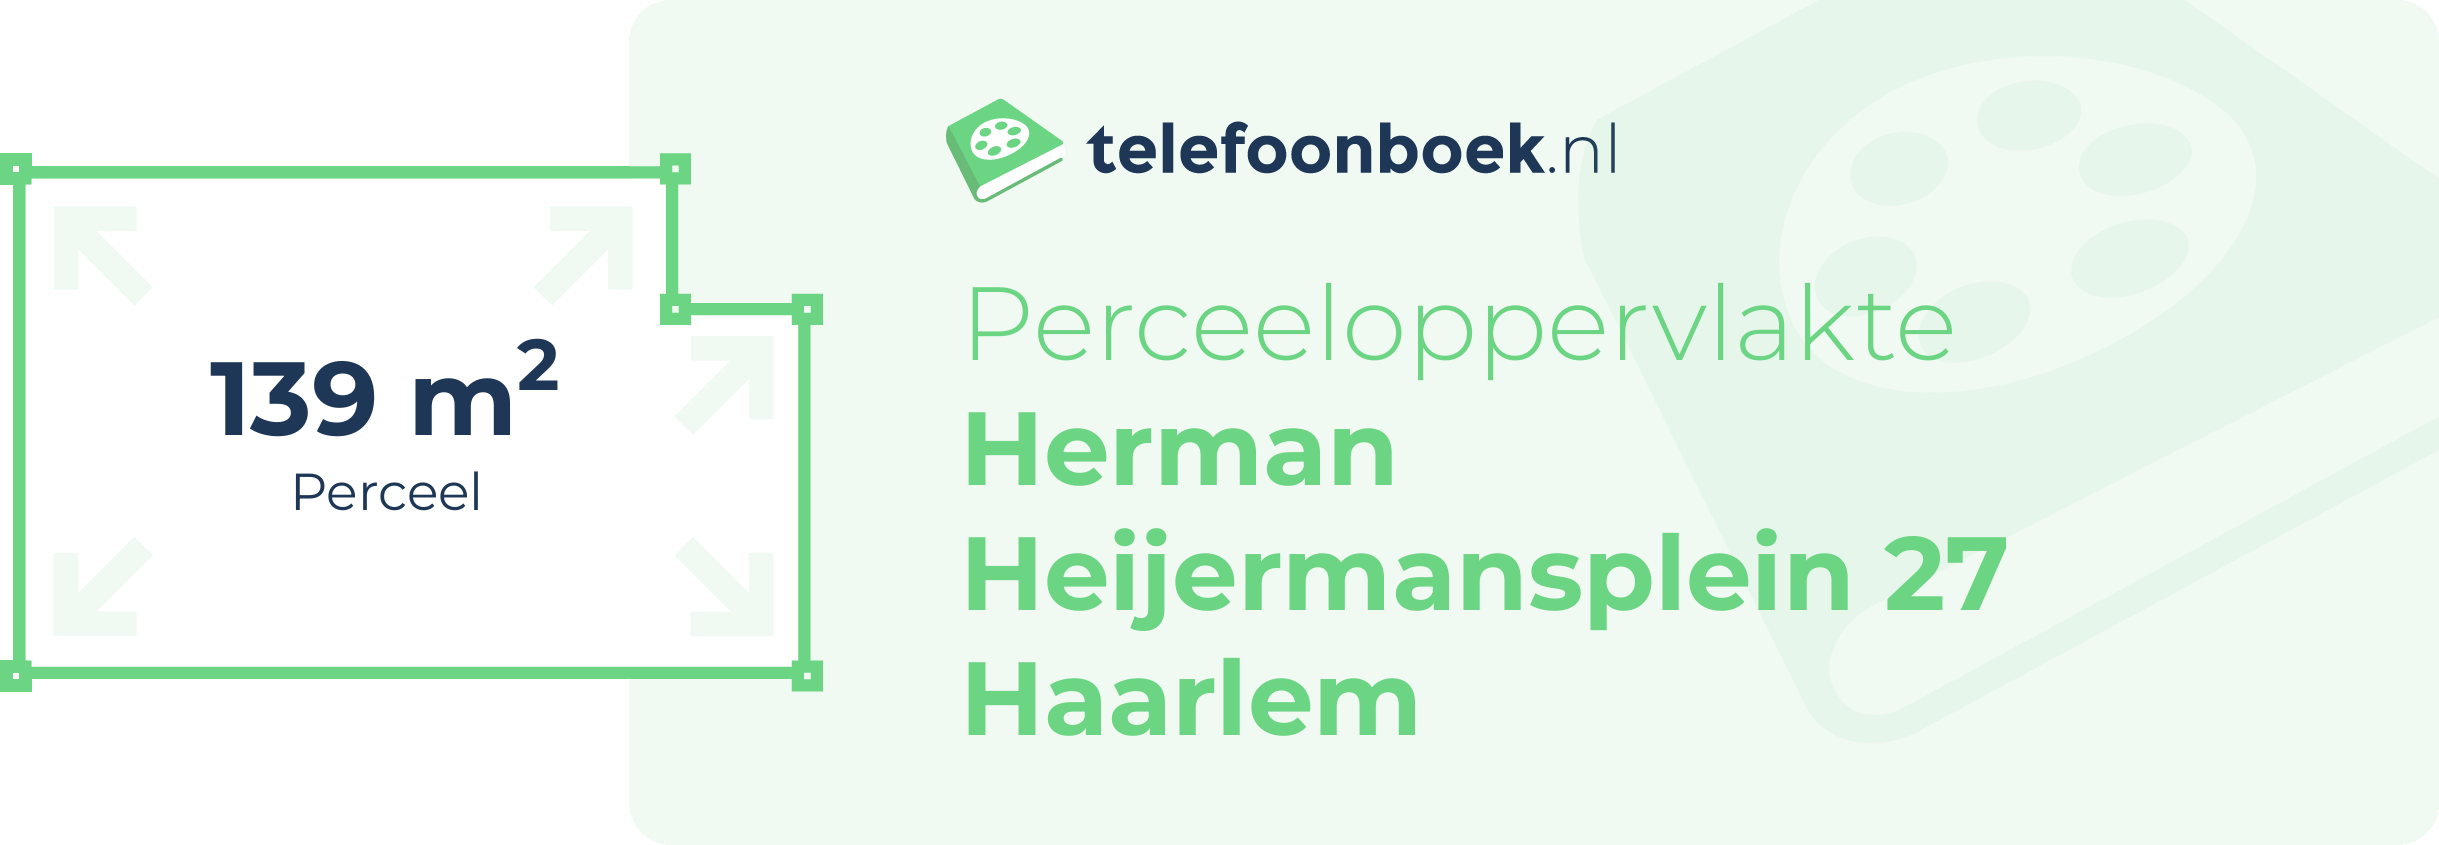 Perceeloppervlakte Herman Heijermansplein 27 Haarlem